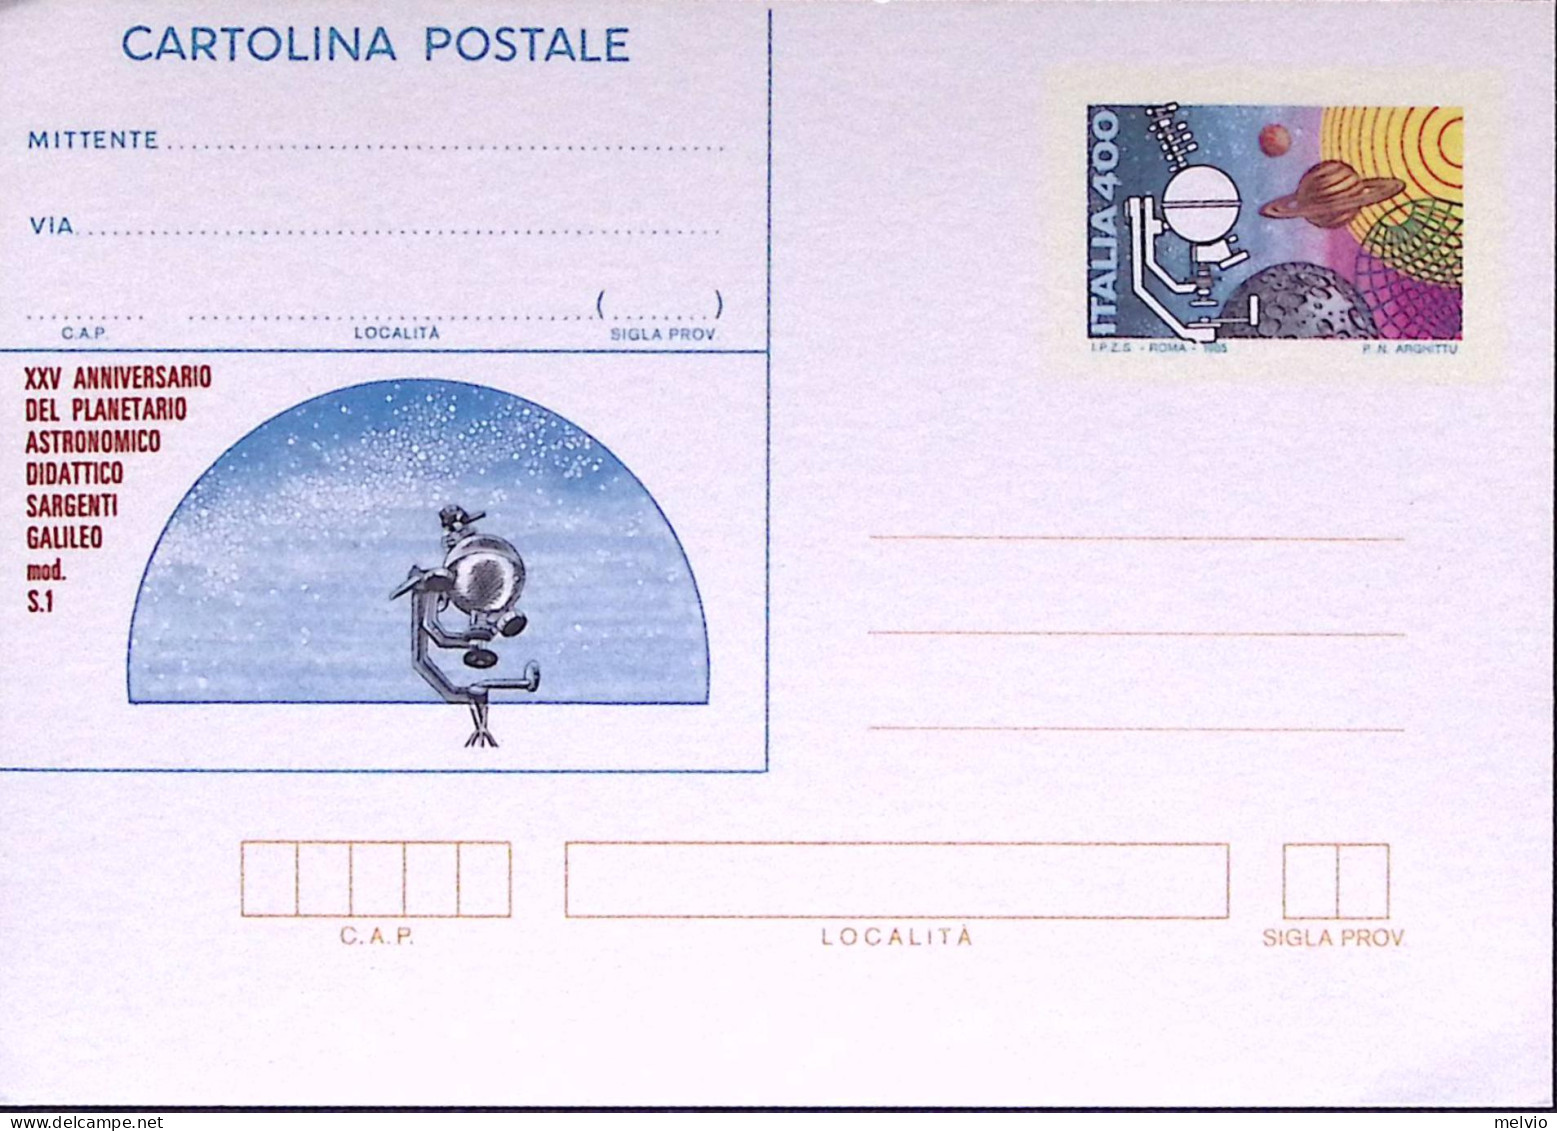 1985-Cartolina Postale Lire 400 Umbriaphil Nuova - Entiers Postaux